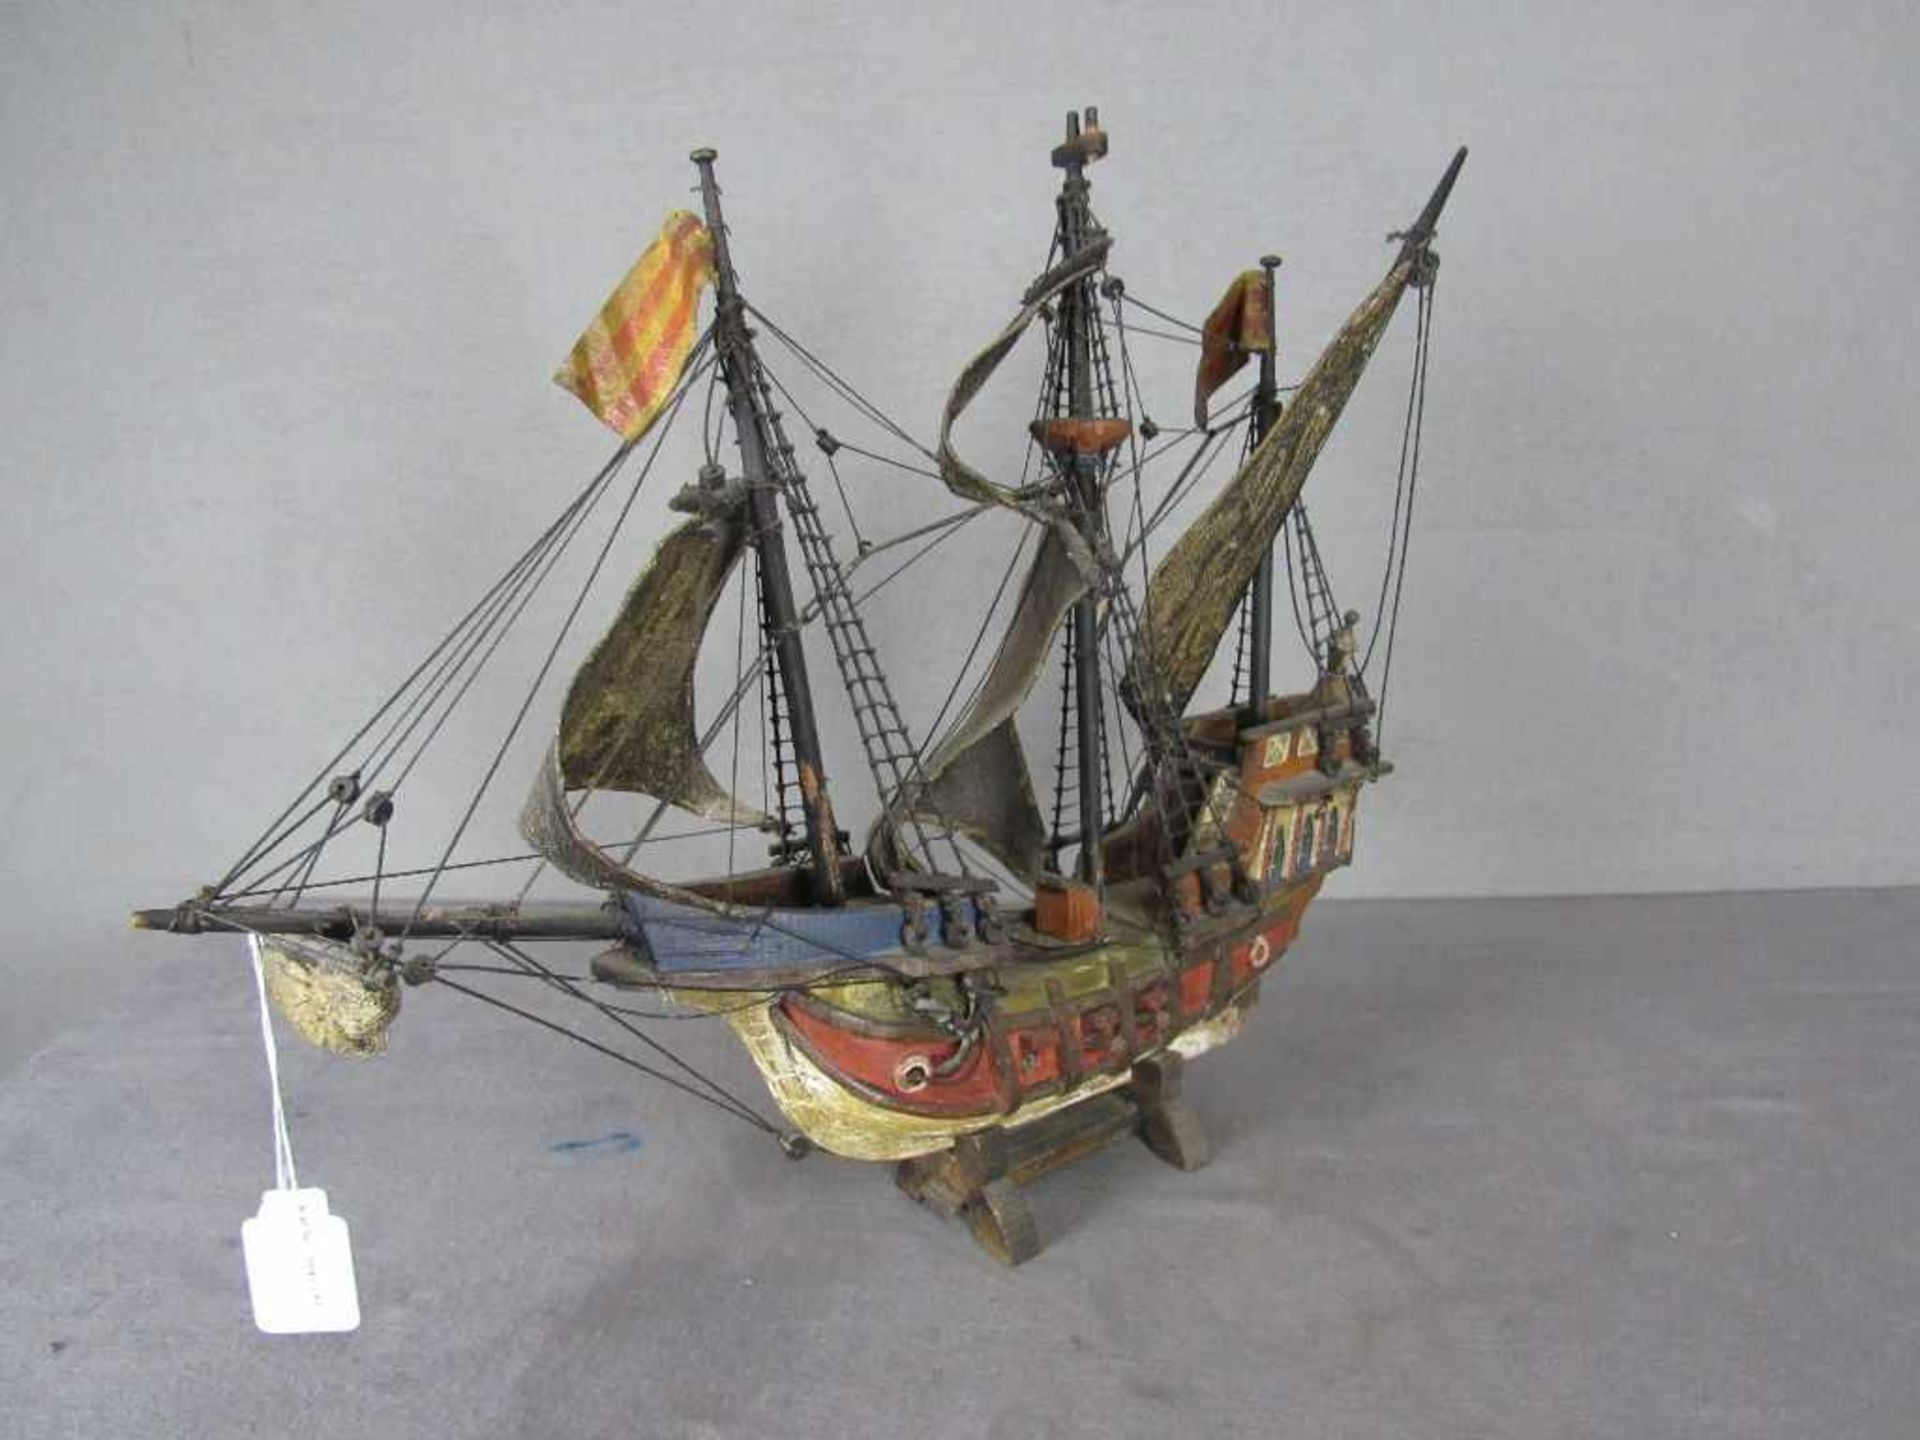 Modellschiff Santa Maria Länge:56cm schön gebaut- - -20.00 % buyer's premium on the hammer price19. - Bild 3 aus 4